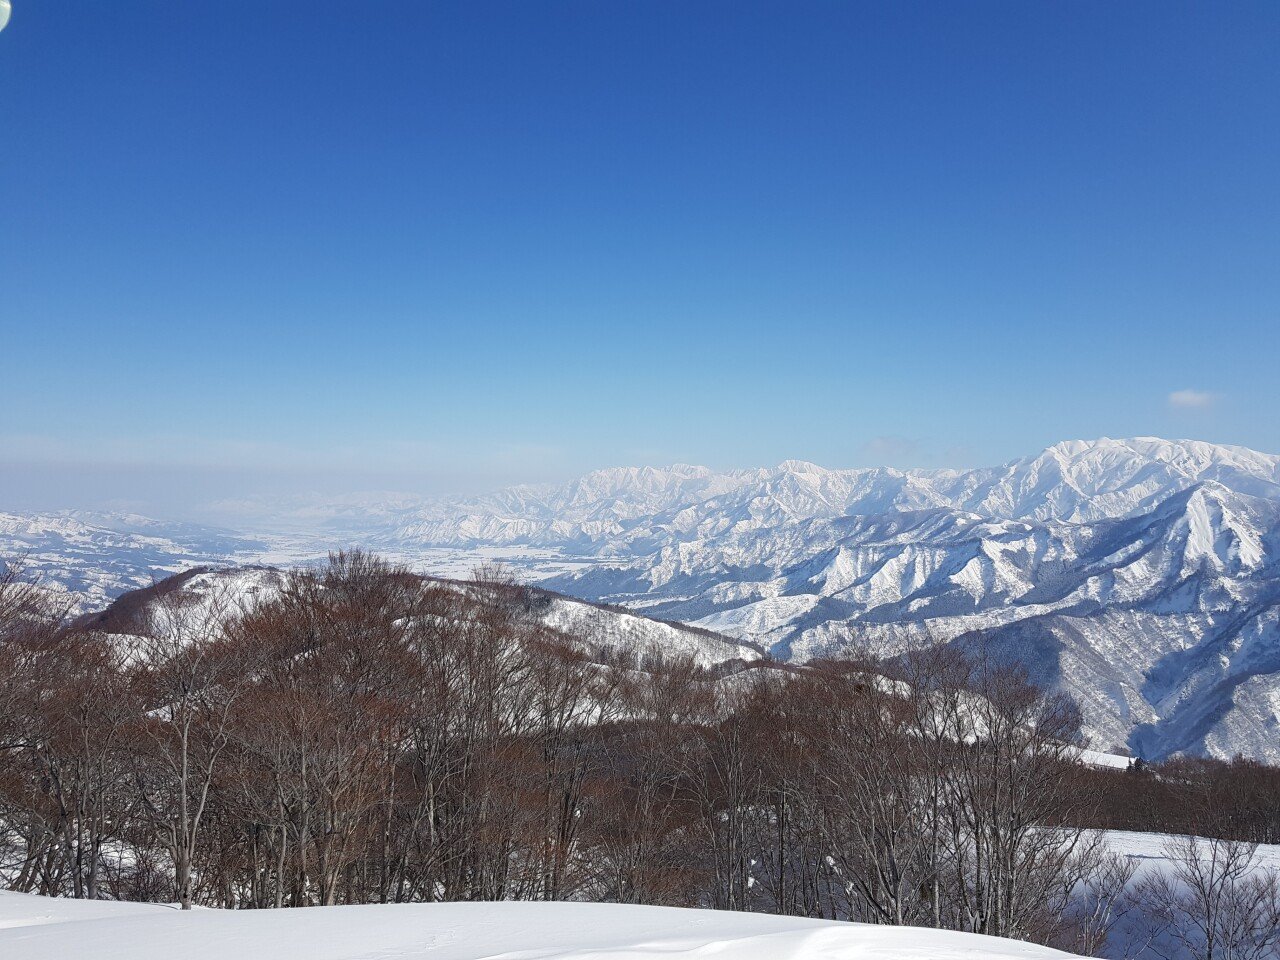 20190130_104443.jpg 눈으로 덮인 겨울 니가타&나가노 여행기(1) (스압?)